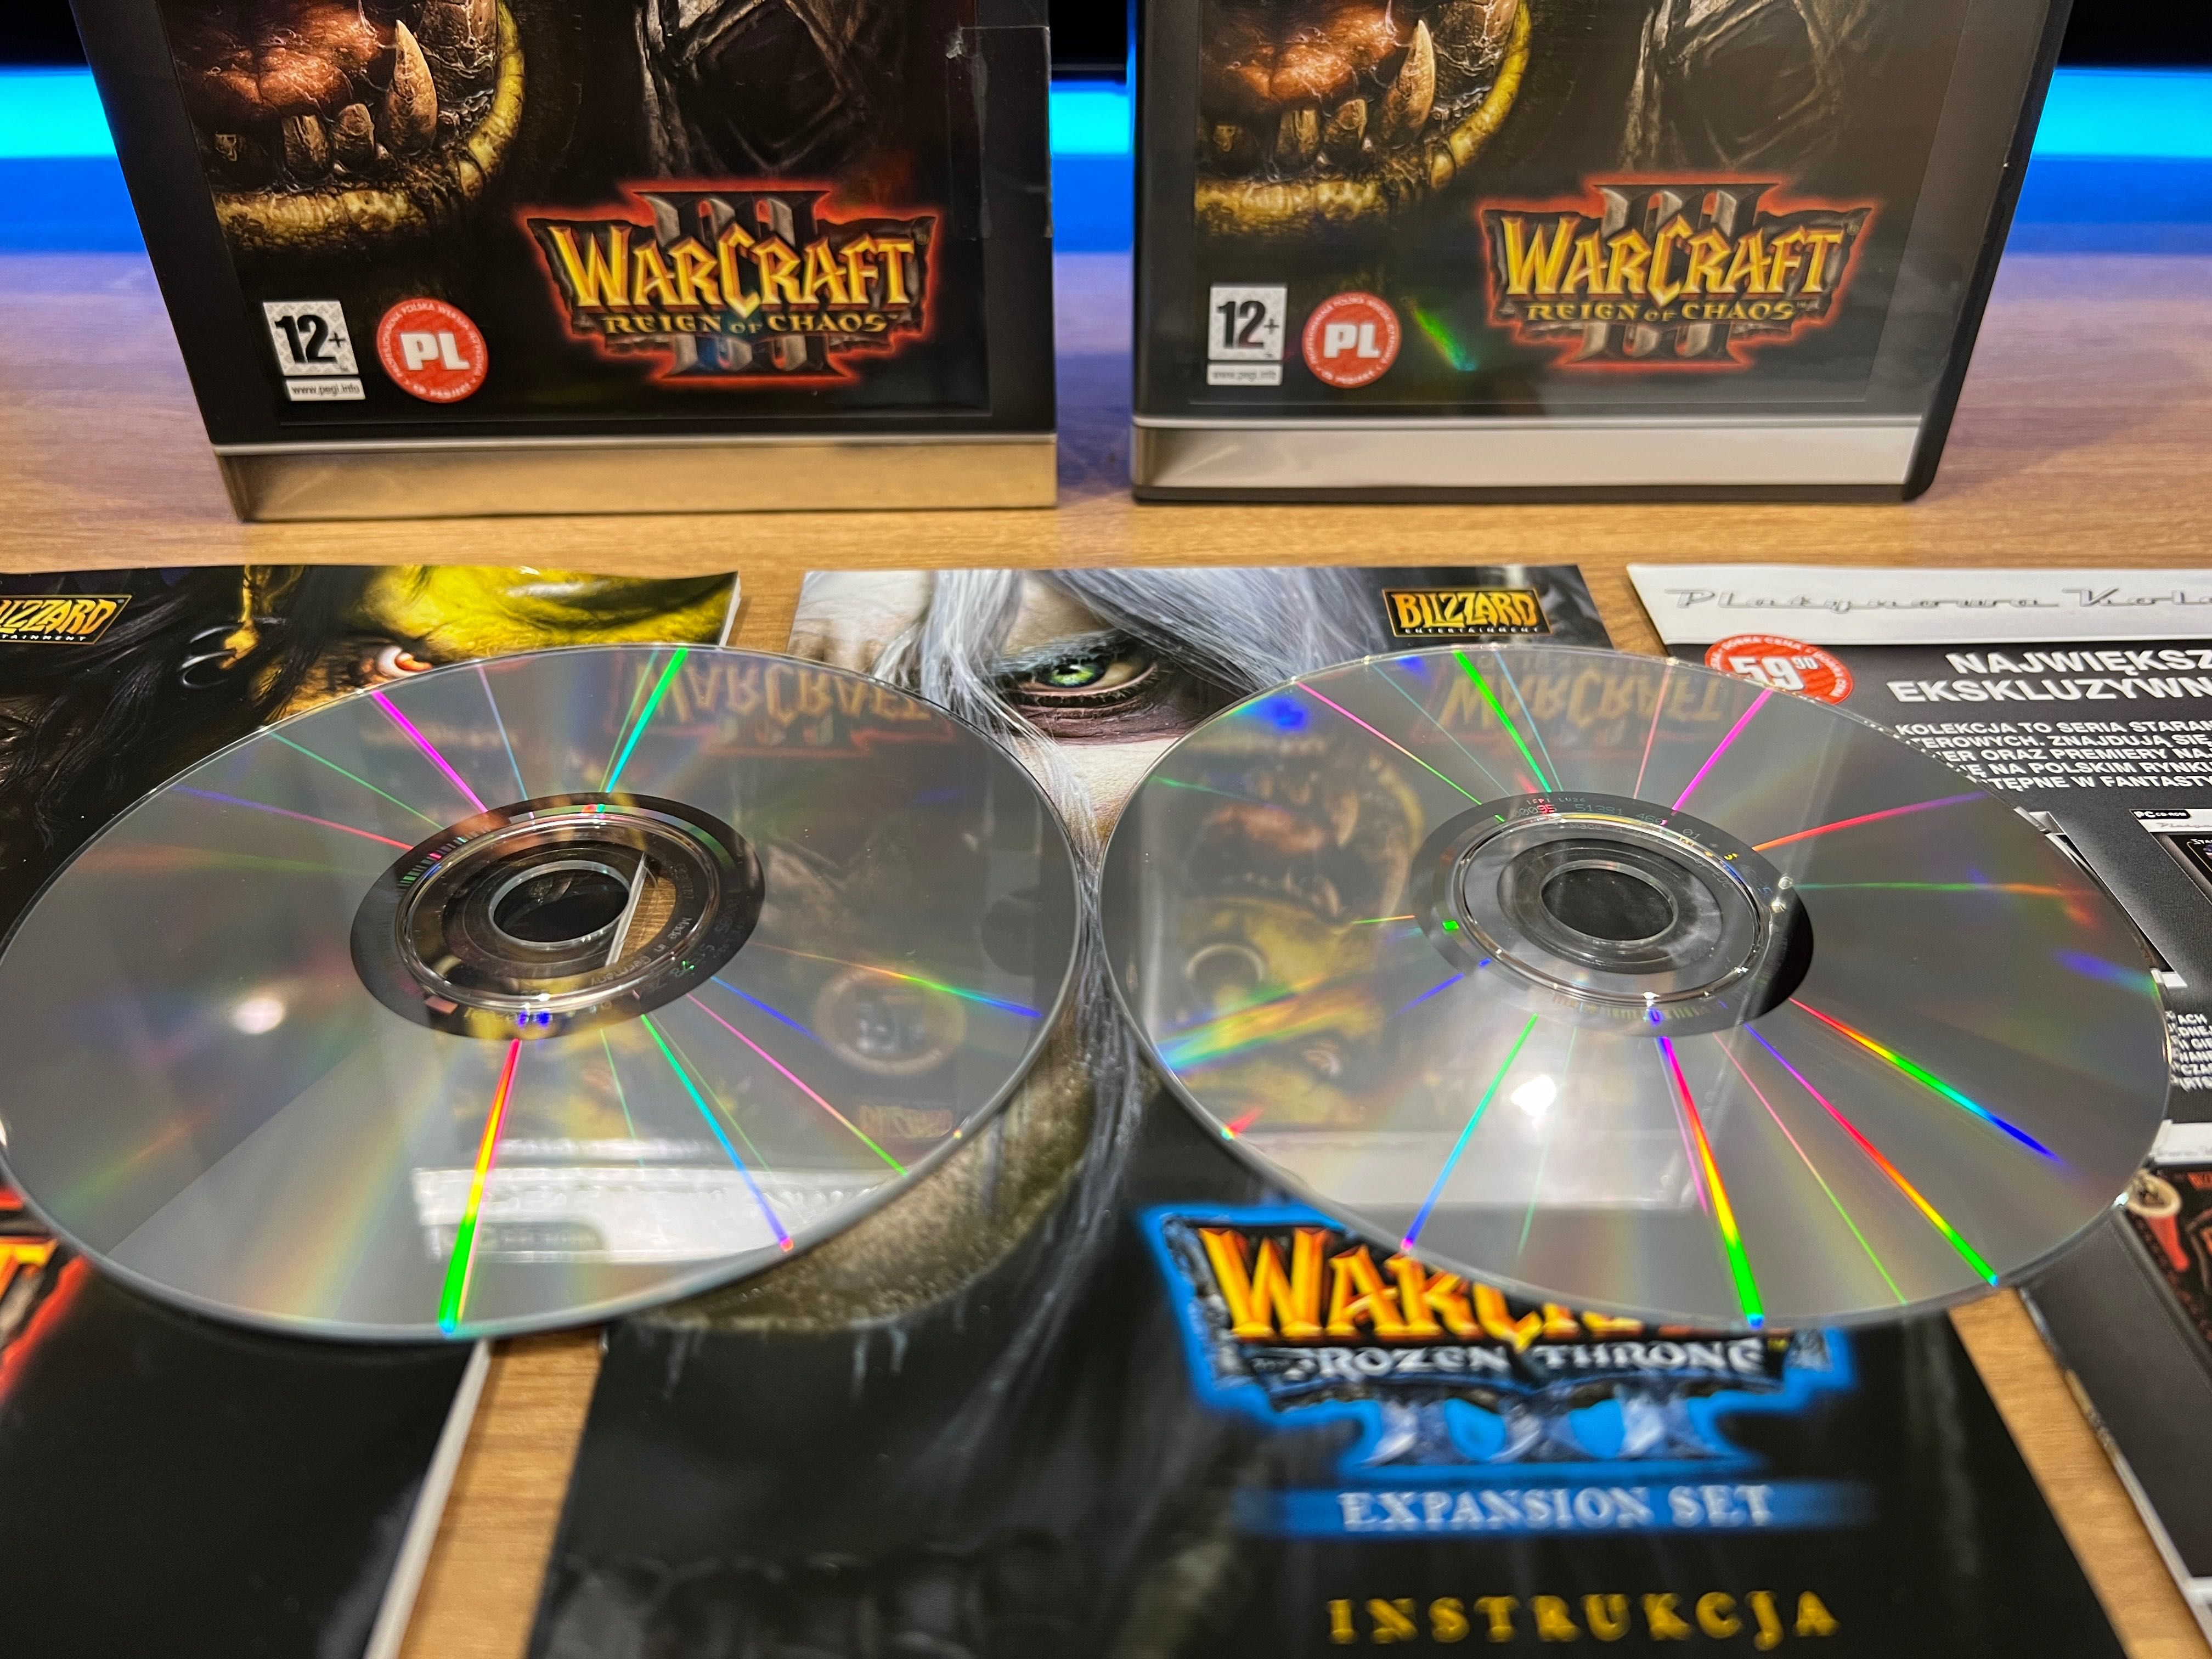 Warcraft III 3 (PC PL 2002) slipcase box wydanie Platynowa Kolekcja